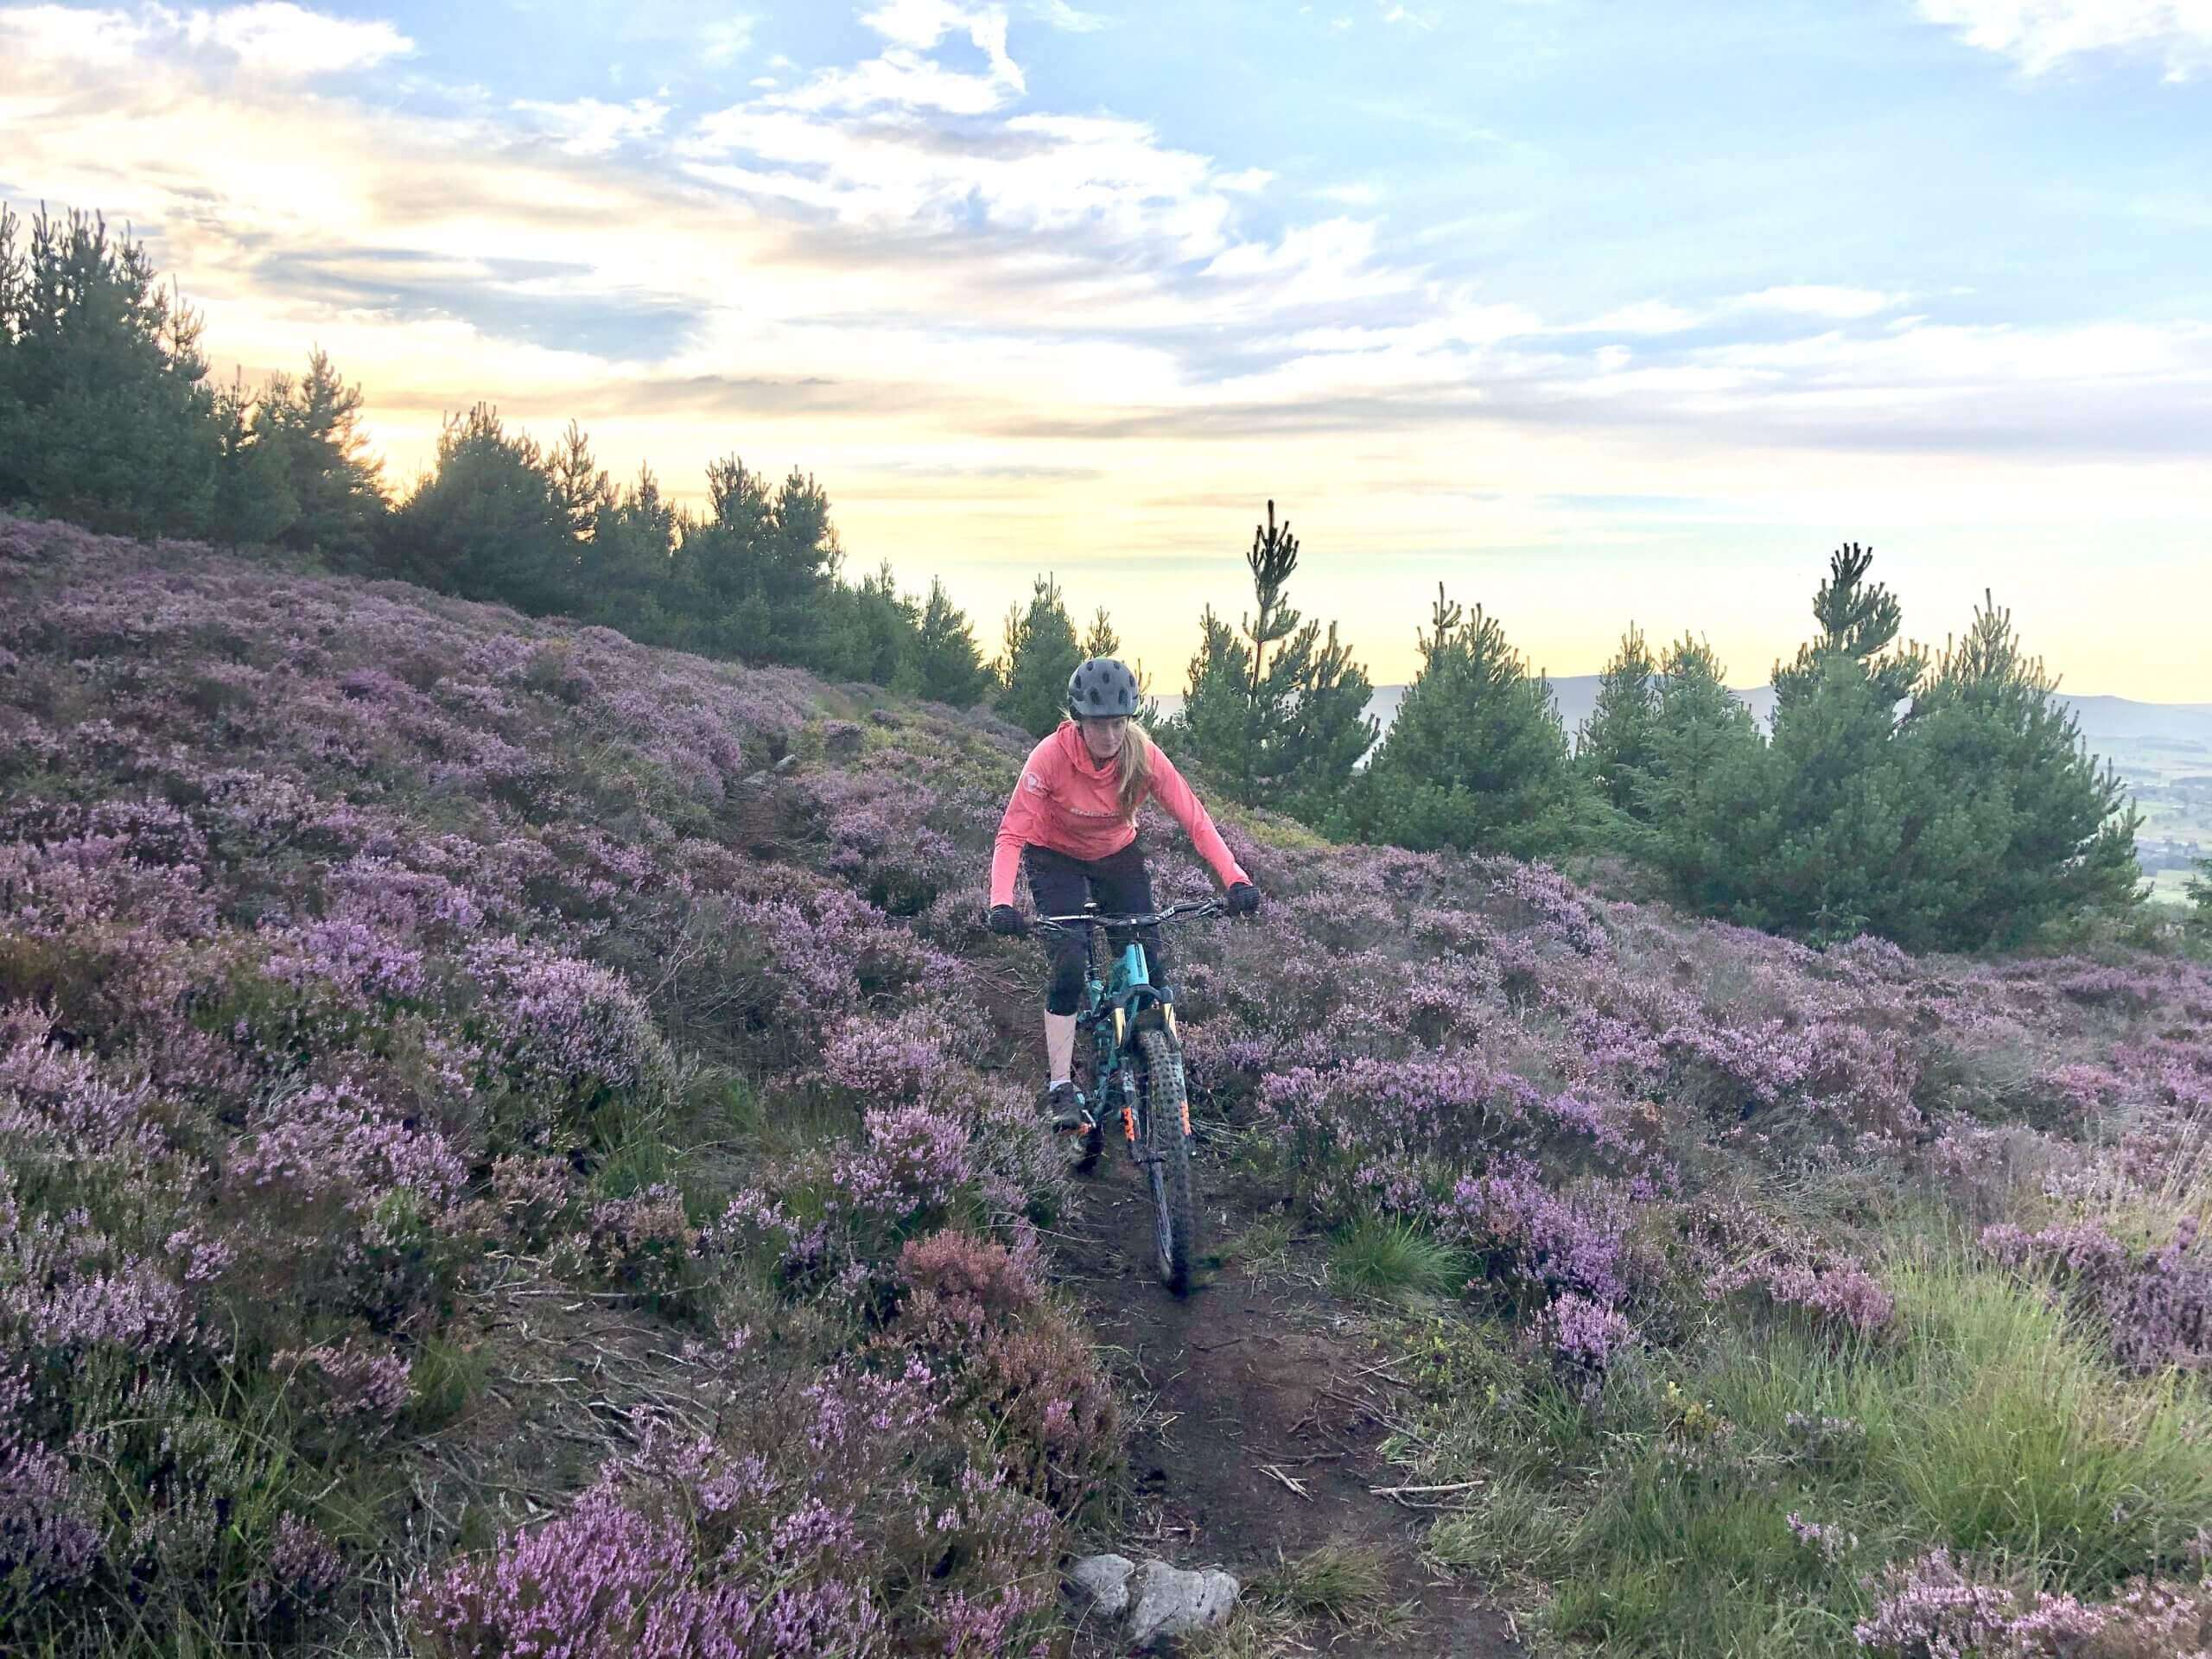 Mountain biking in purple heather